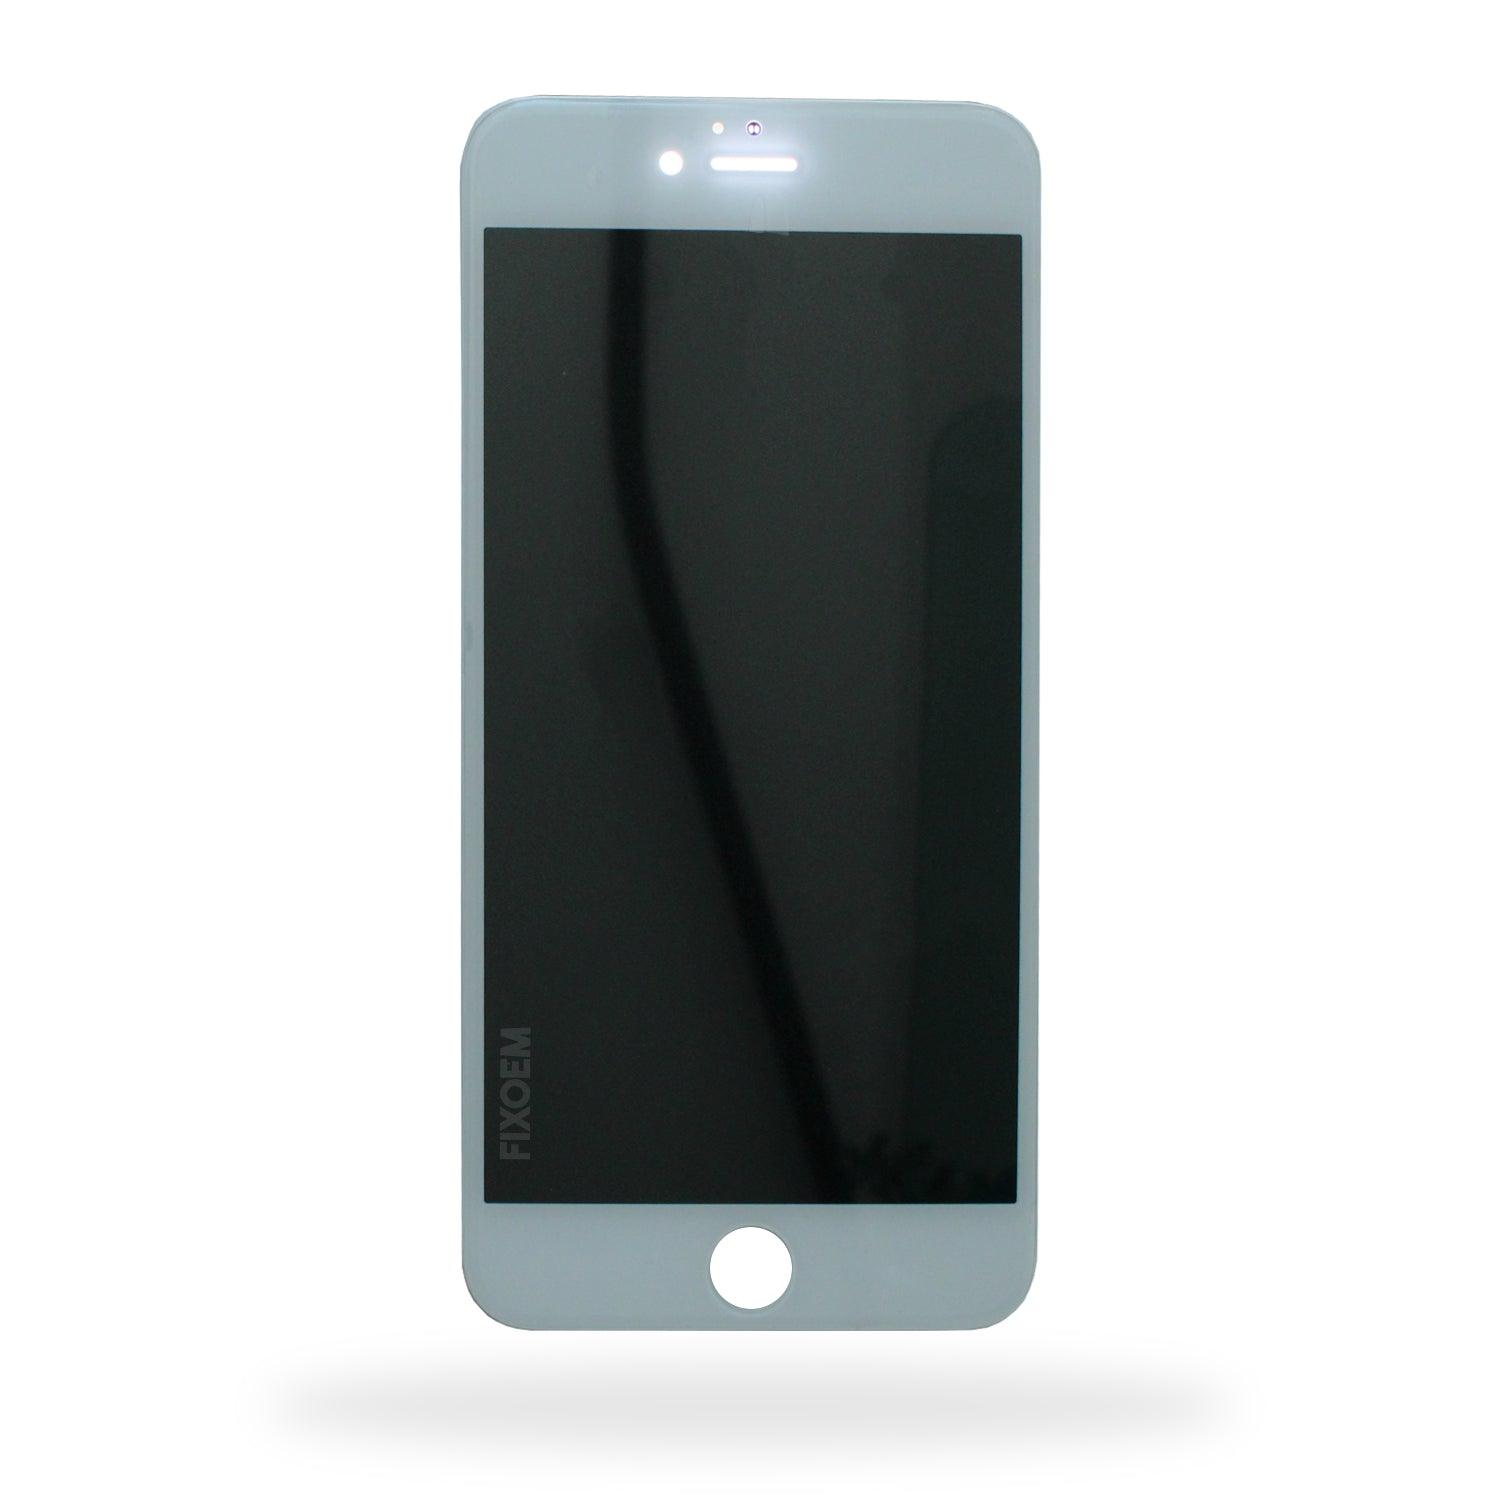 Display Iphone 6 Plus A1522 A1524. a solo $ 210.00 Refaccion y puestos celulares, refurbish y microelectronica.- FixOEM